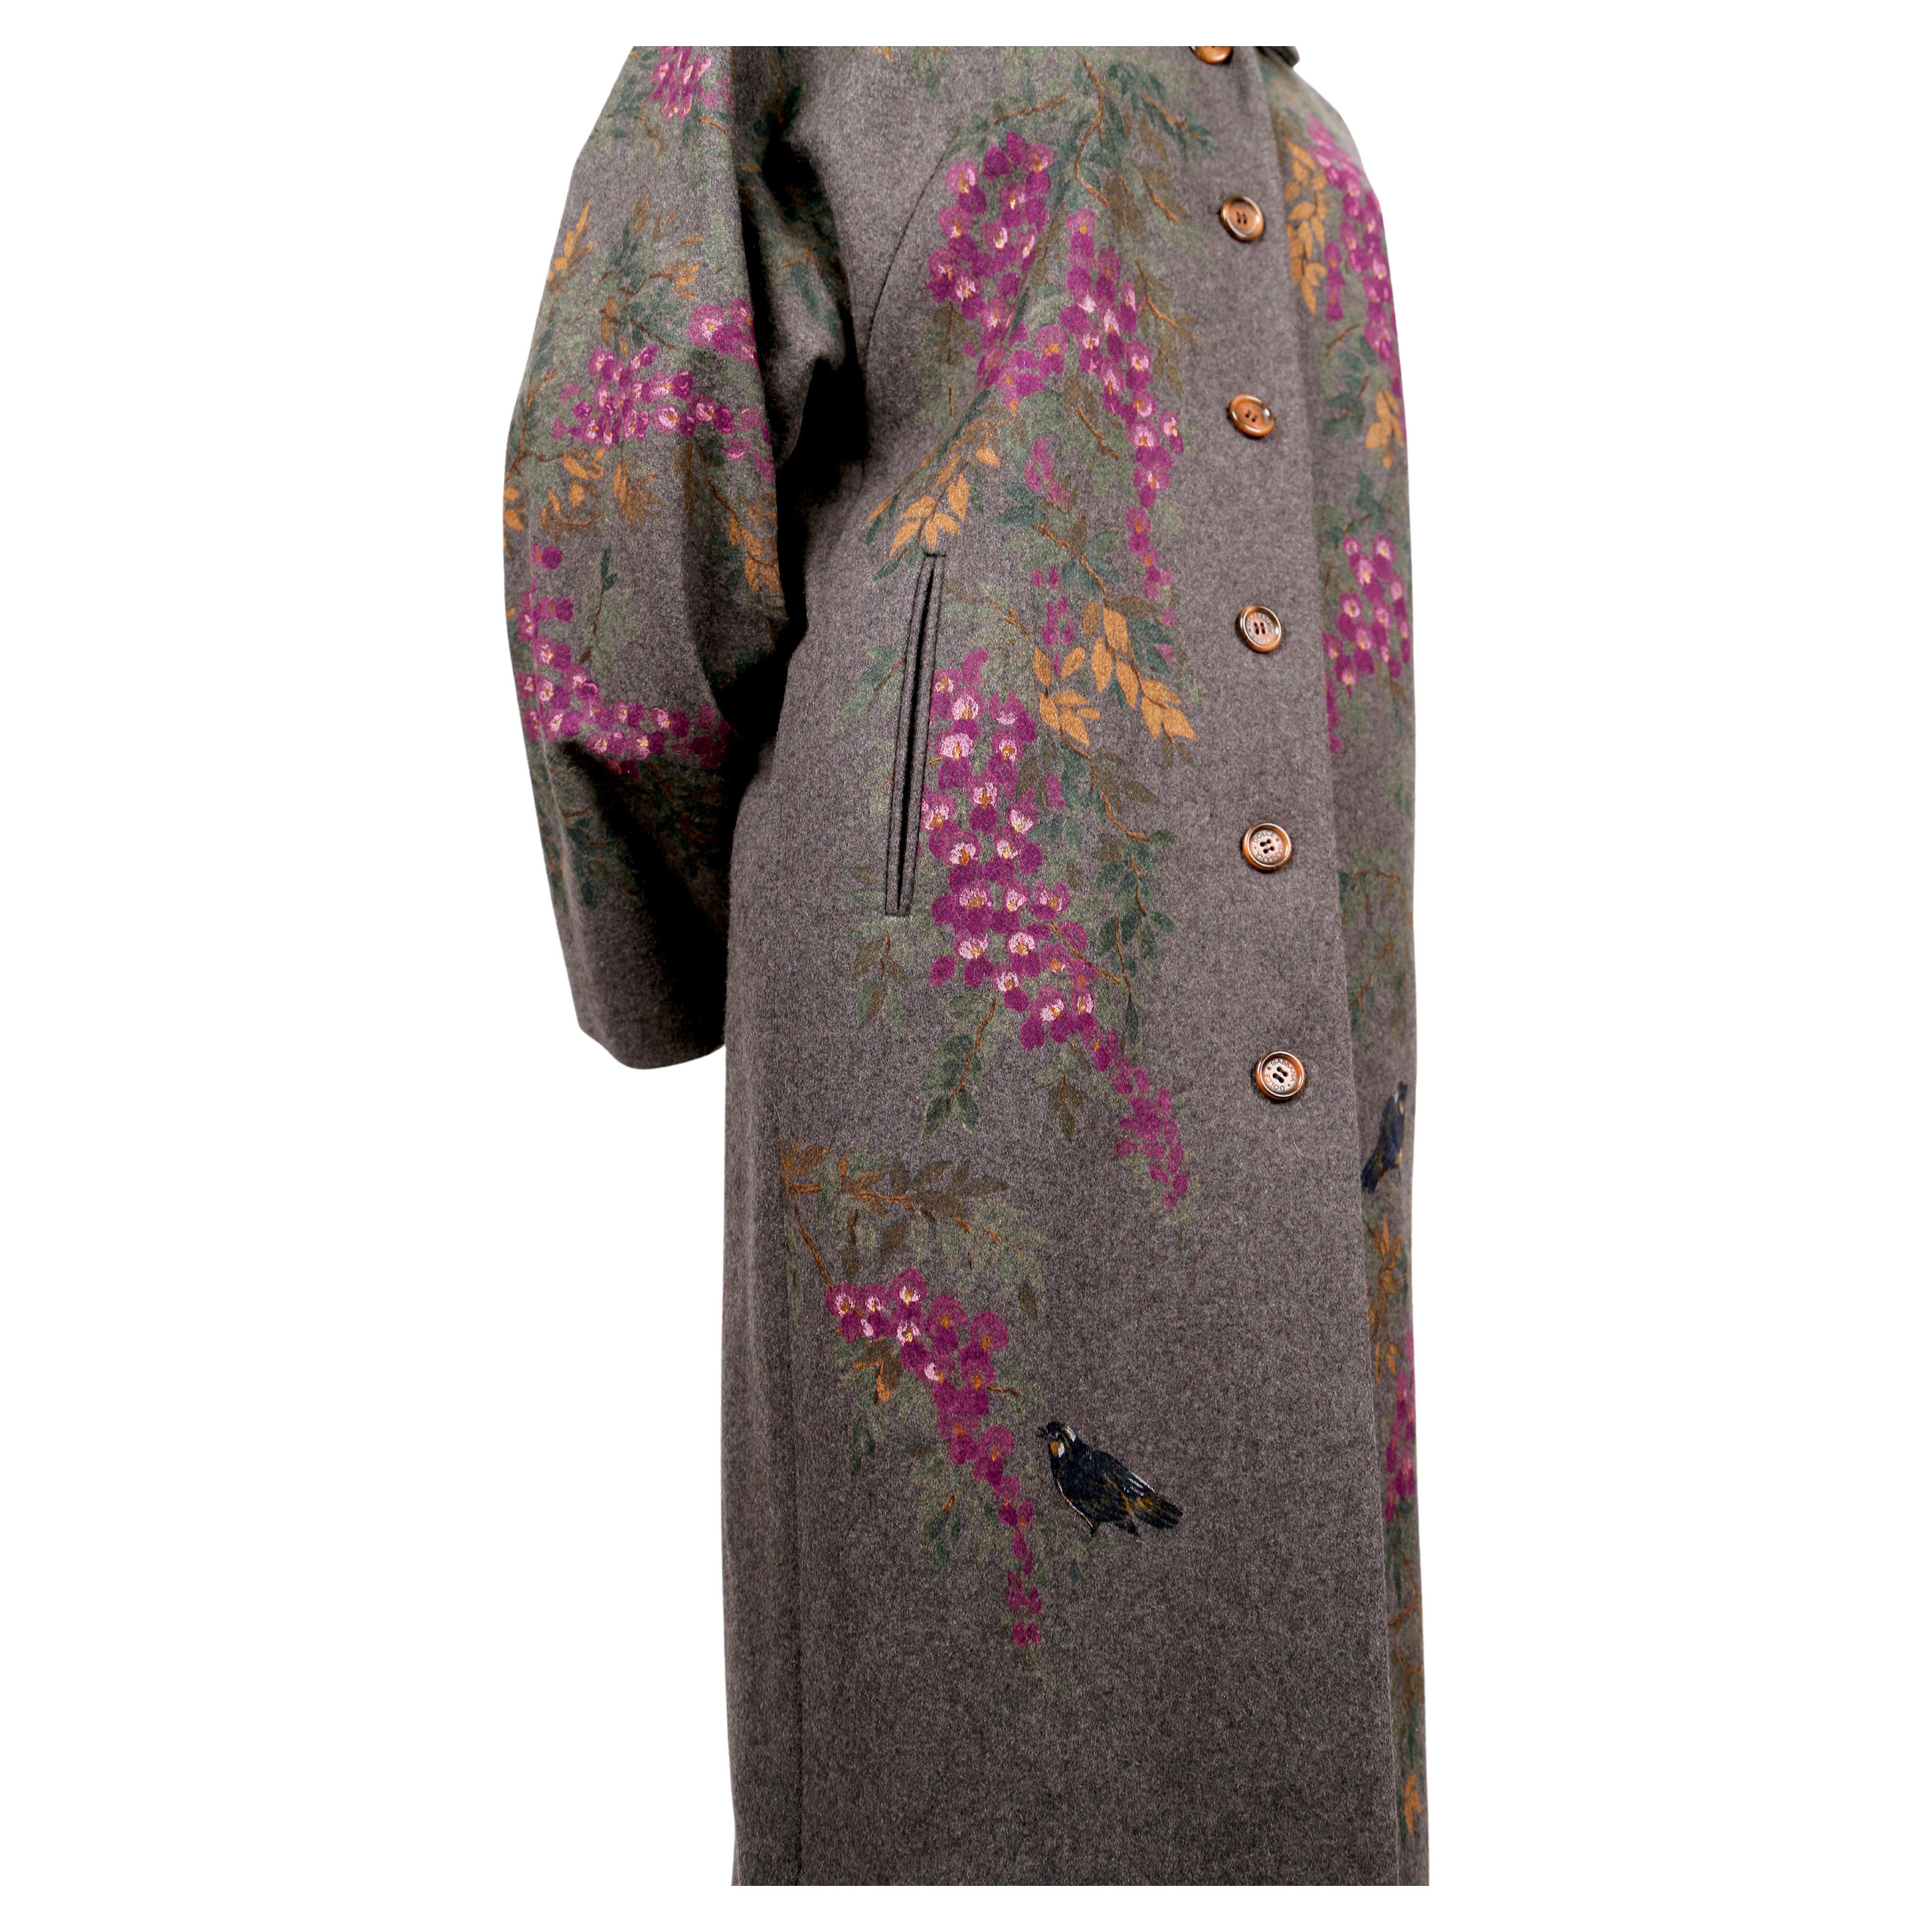 Atemberaubender, handbemalter, erdgrauer Wollmantel mit Blumen- und Vogelmotiv, entworfen von Dolce & Gabbana aus dem Herbst 1998. Der Mantel hat die Form eines Opernmantels aus den 1920er Jahren mit einem gekerbten Kragen und vollen Ärmeln im